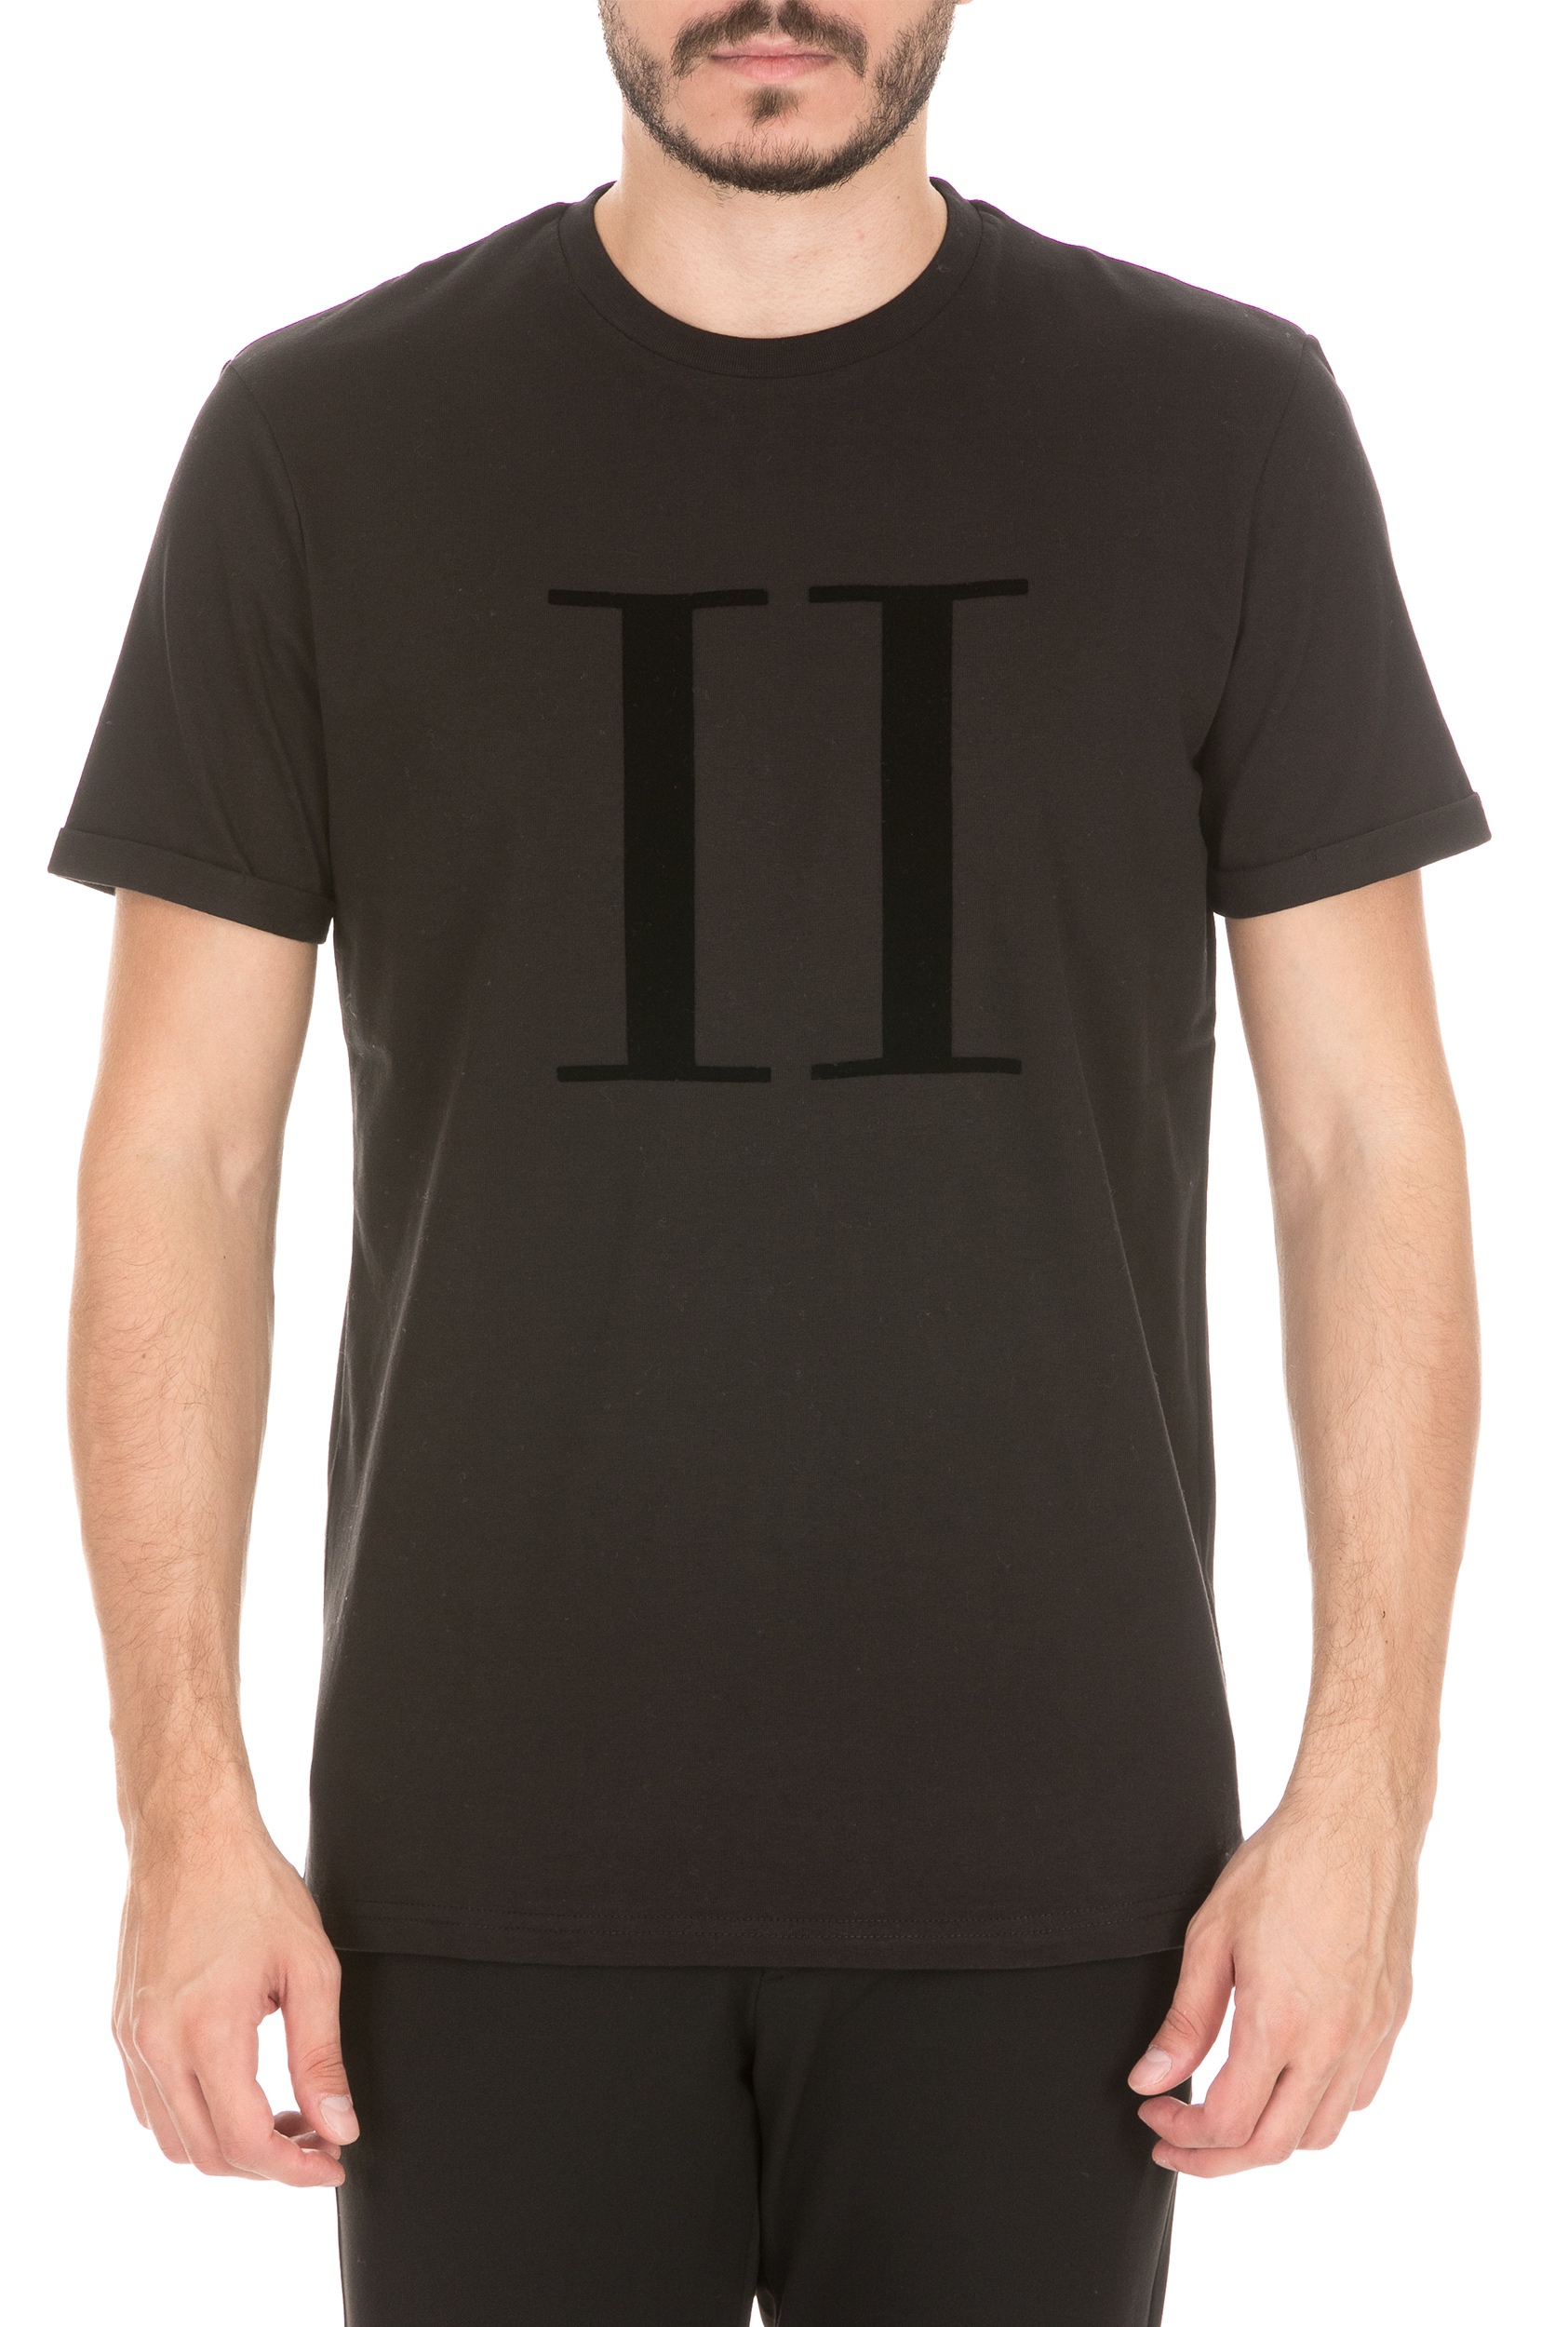 LES DEUX - Ανδρική κοντομάνικη μπλούζα LES DEUX ENCORE μαύρη Ανδρικά/Ρούχα/Μπλούζες/Κοντομάνικες